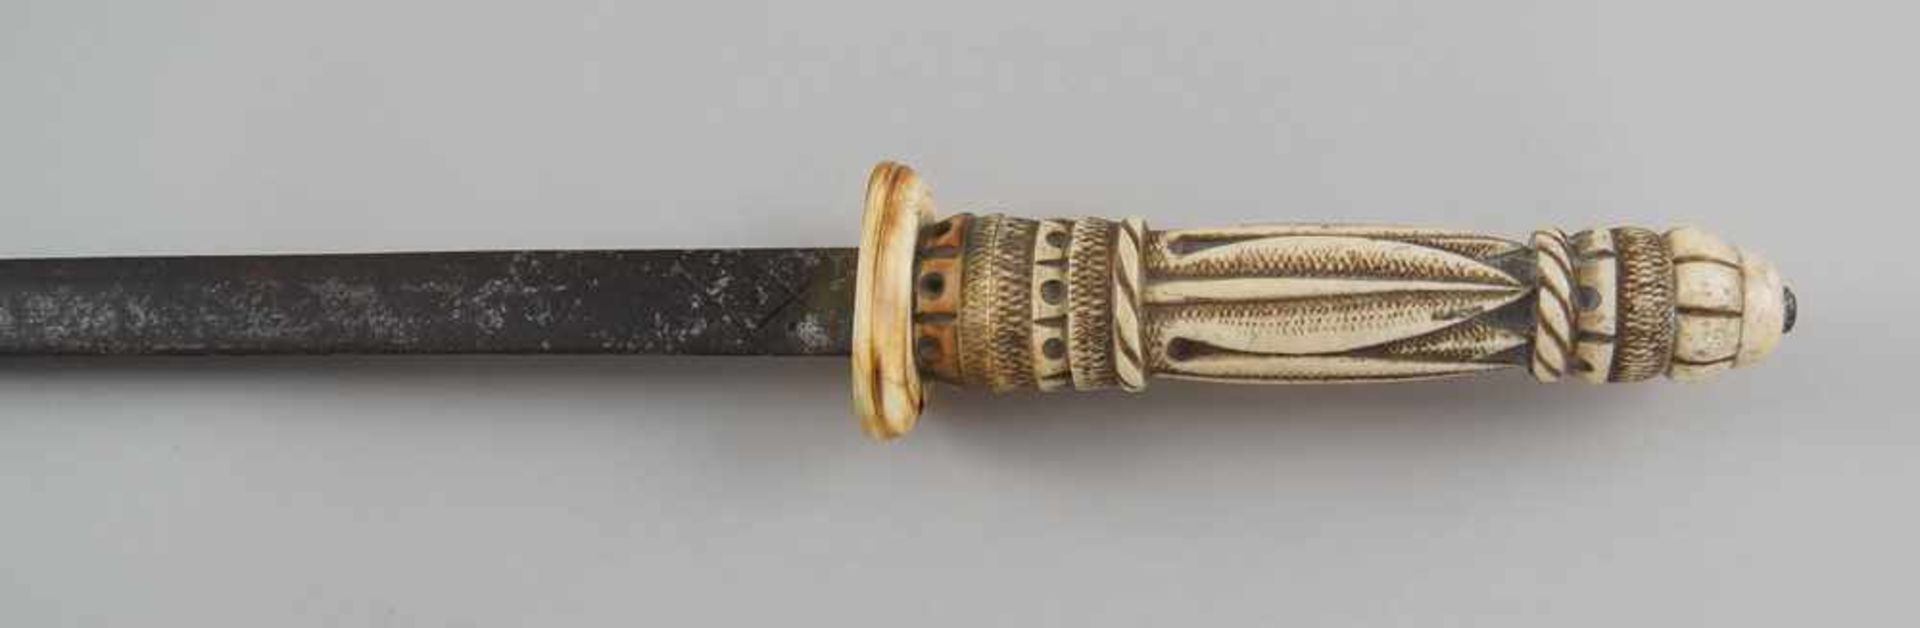 Schwert mit fein geschnitzter Scheide und Griff aus Elfenbein, Klinge aus Eisen, 19. JH, - Bild 3 aus 11